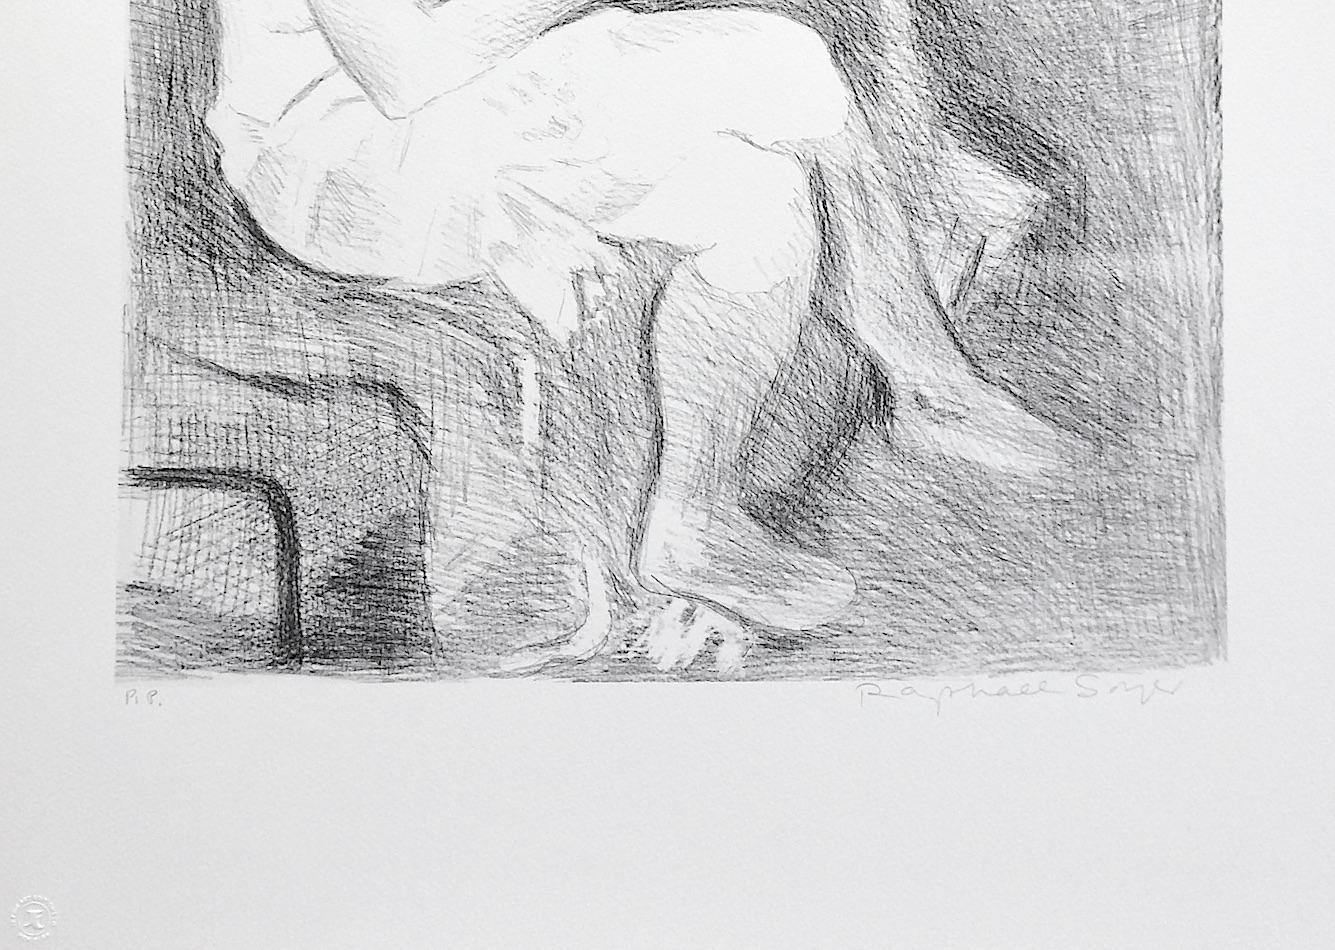 SEATED WOMAN PINK SOCKS ist eine originale handgezeichnete (nicht digital oder fotoreproduzierte) Lithographie in limitierter Auflage des Künstlers Raphael Soyer - russischer/amerikanischer Maler des Sozialrealismus, 1899-1987. Gedruckt in